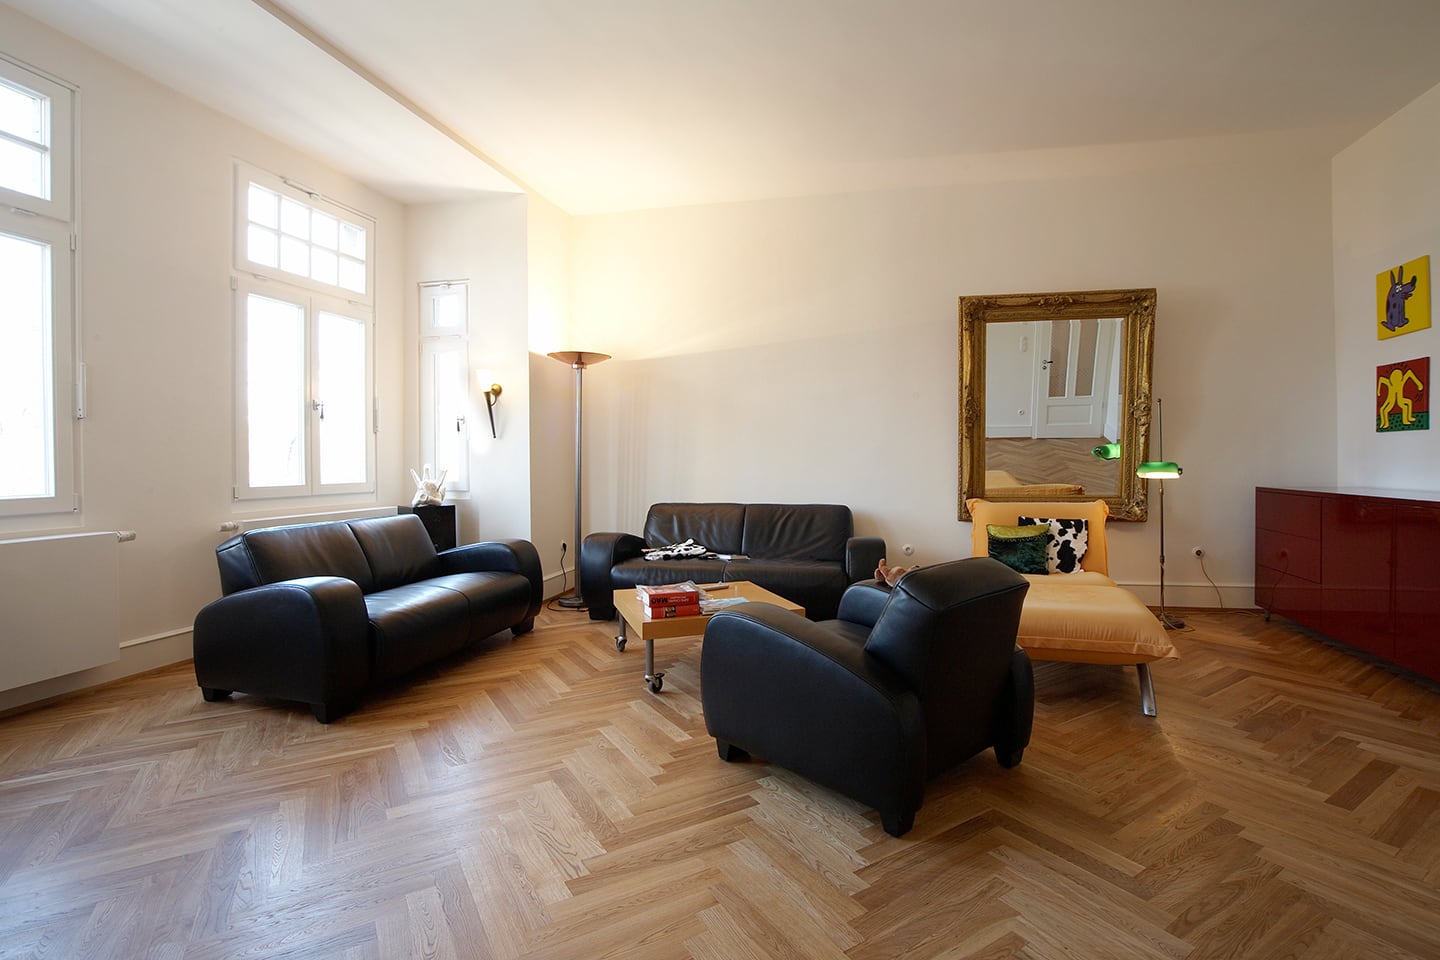 Immobilie Filderstraße: Wohnzimmer mit Echtholz-Parkett